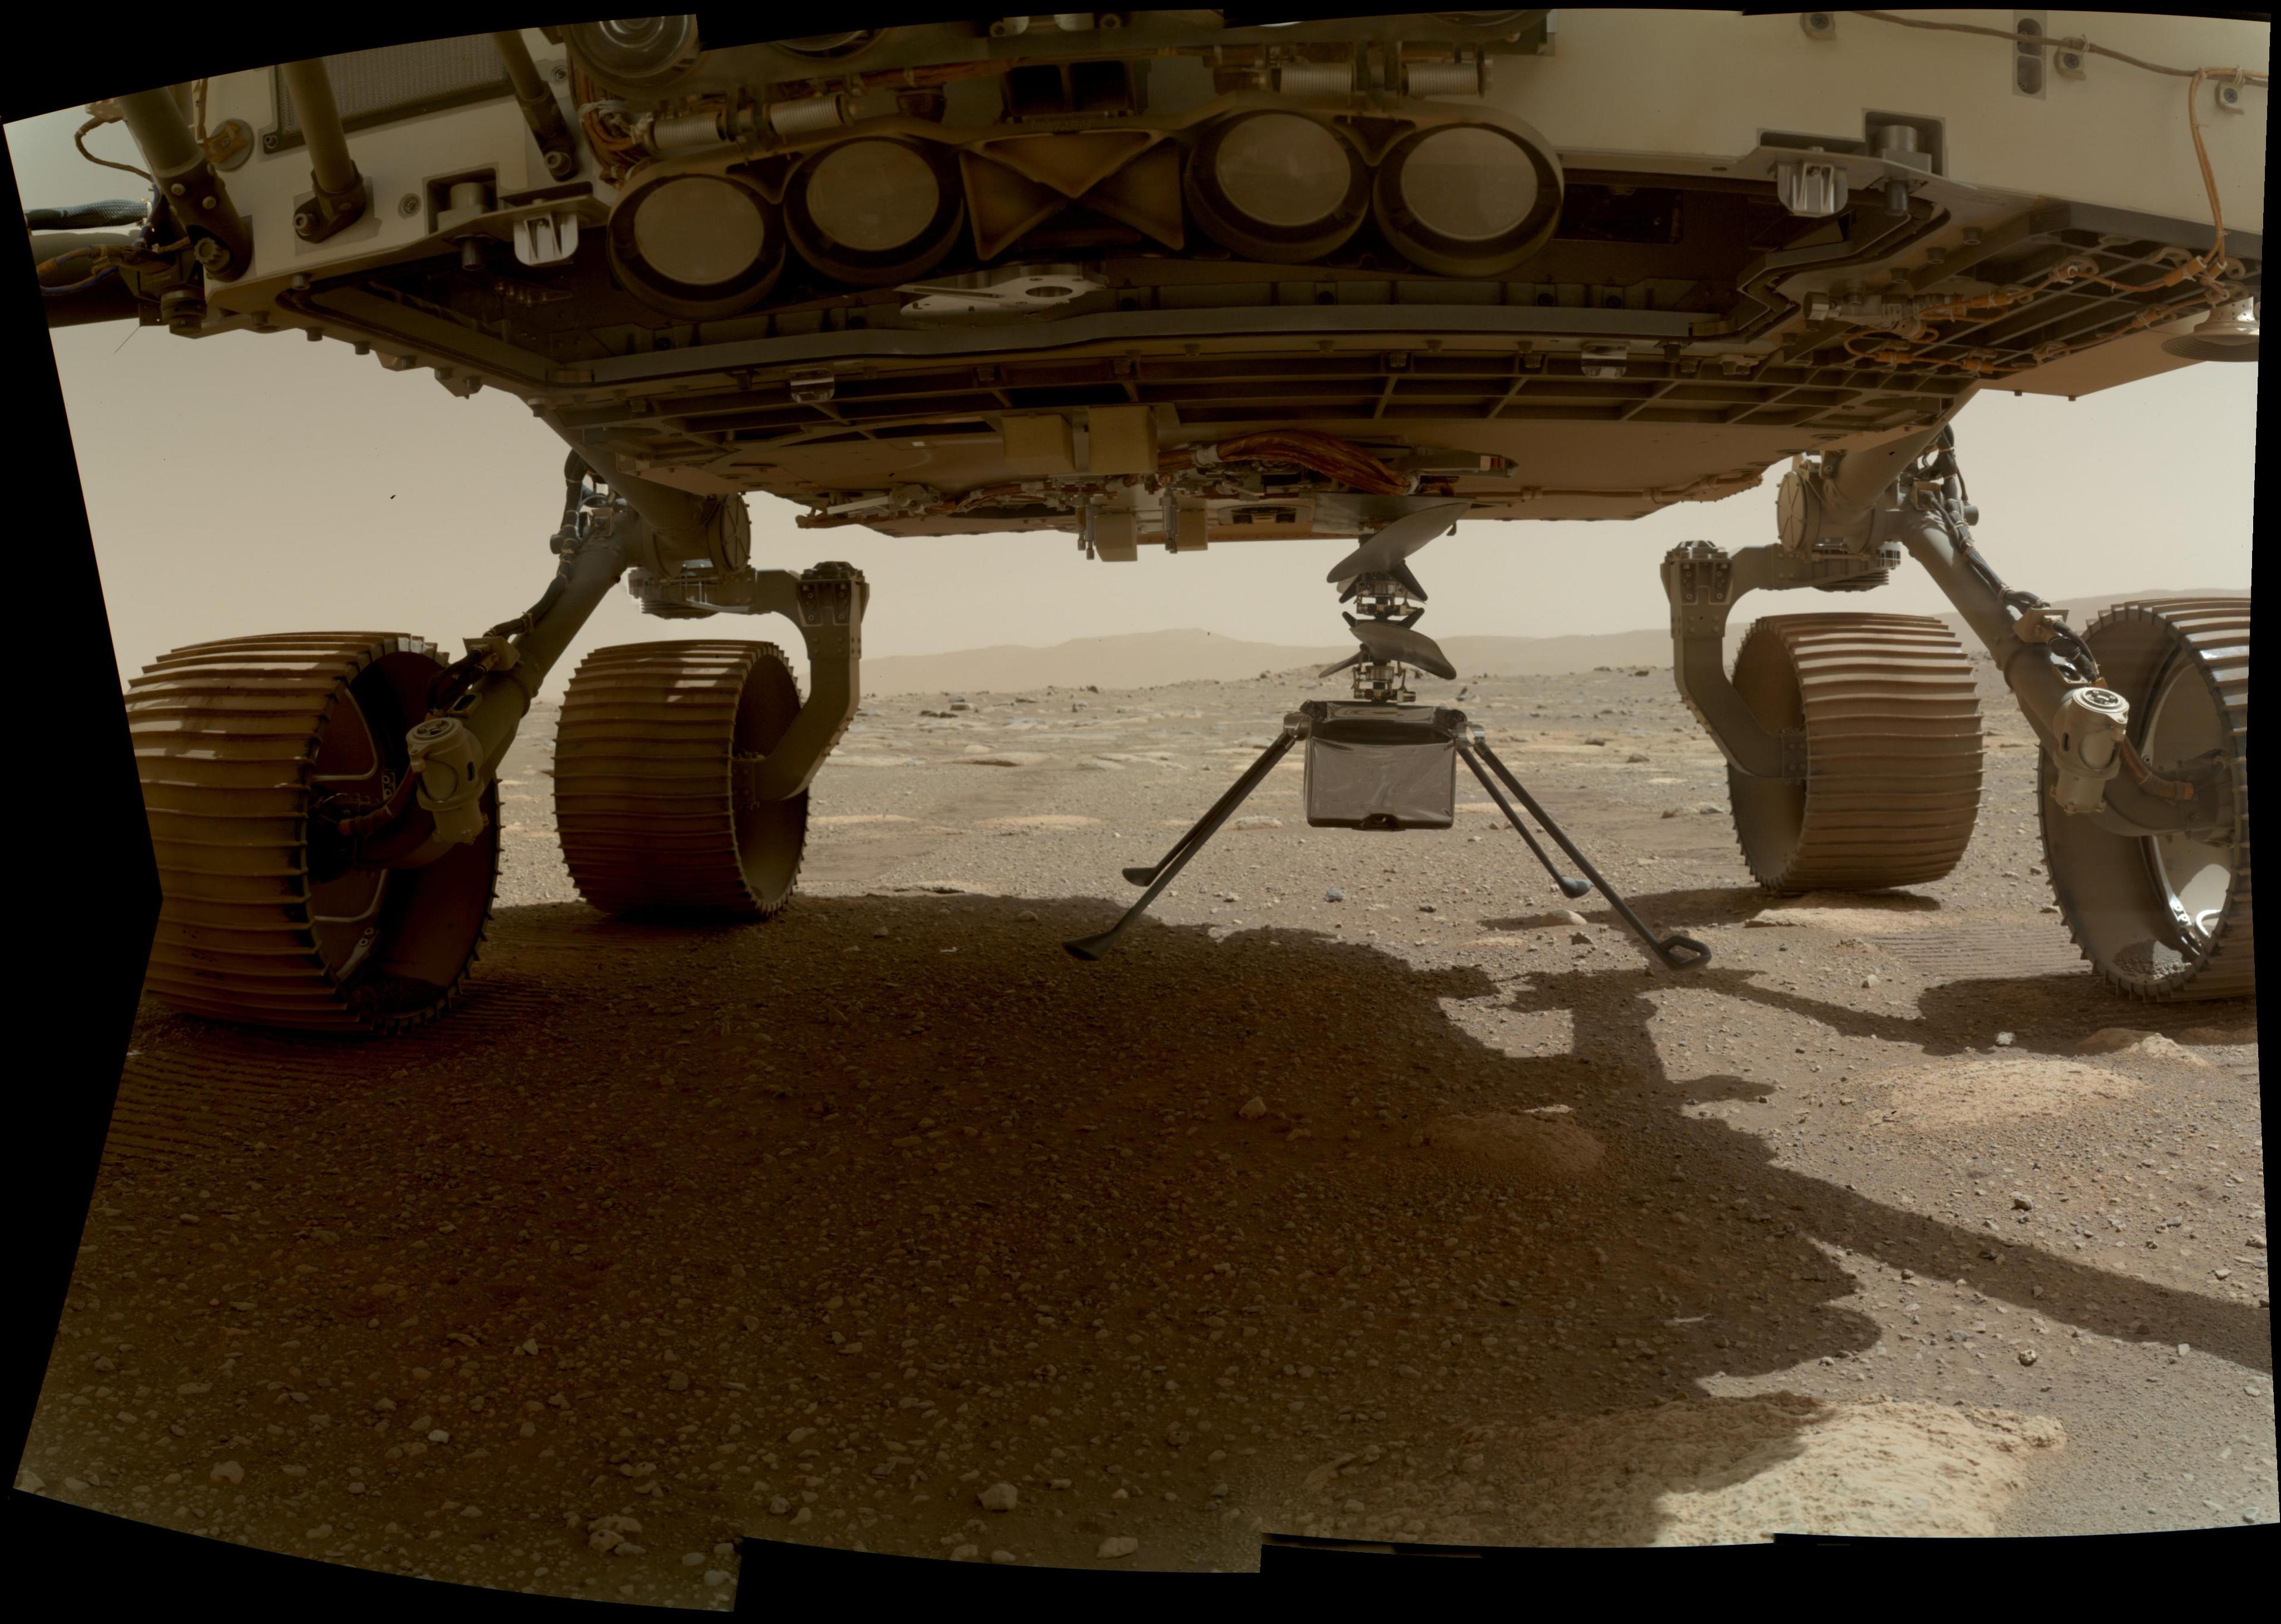 أسفل بطن عربة المُثابرة الجوّالة على سطح المرّيخ، حيث تتدلّى مروحيّة "البراعة" المرّيخيّة مرتفعةً عدّة سنتيمترات فوق السطح المرّيخي وأرجلها الأربعة كلّها مبسوطة إلى الأسفل، بينما تظهر آثار عجلات العربة تحتها وحافّة فوّهة جيزيرو في البعيد.